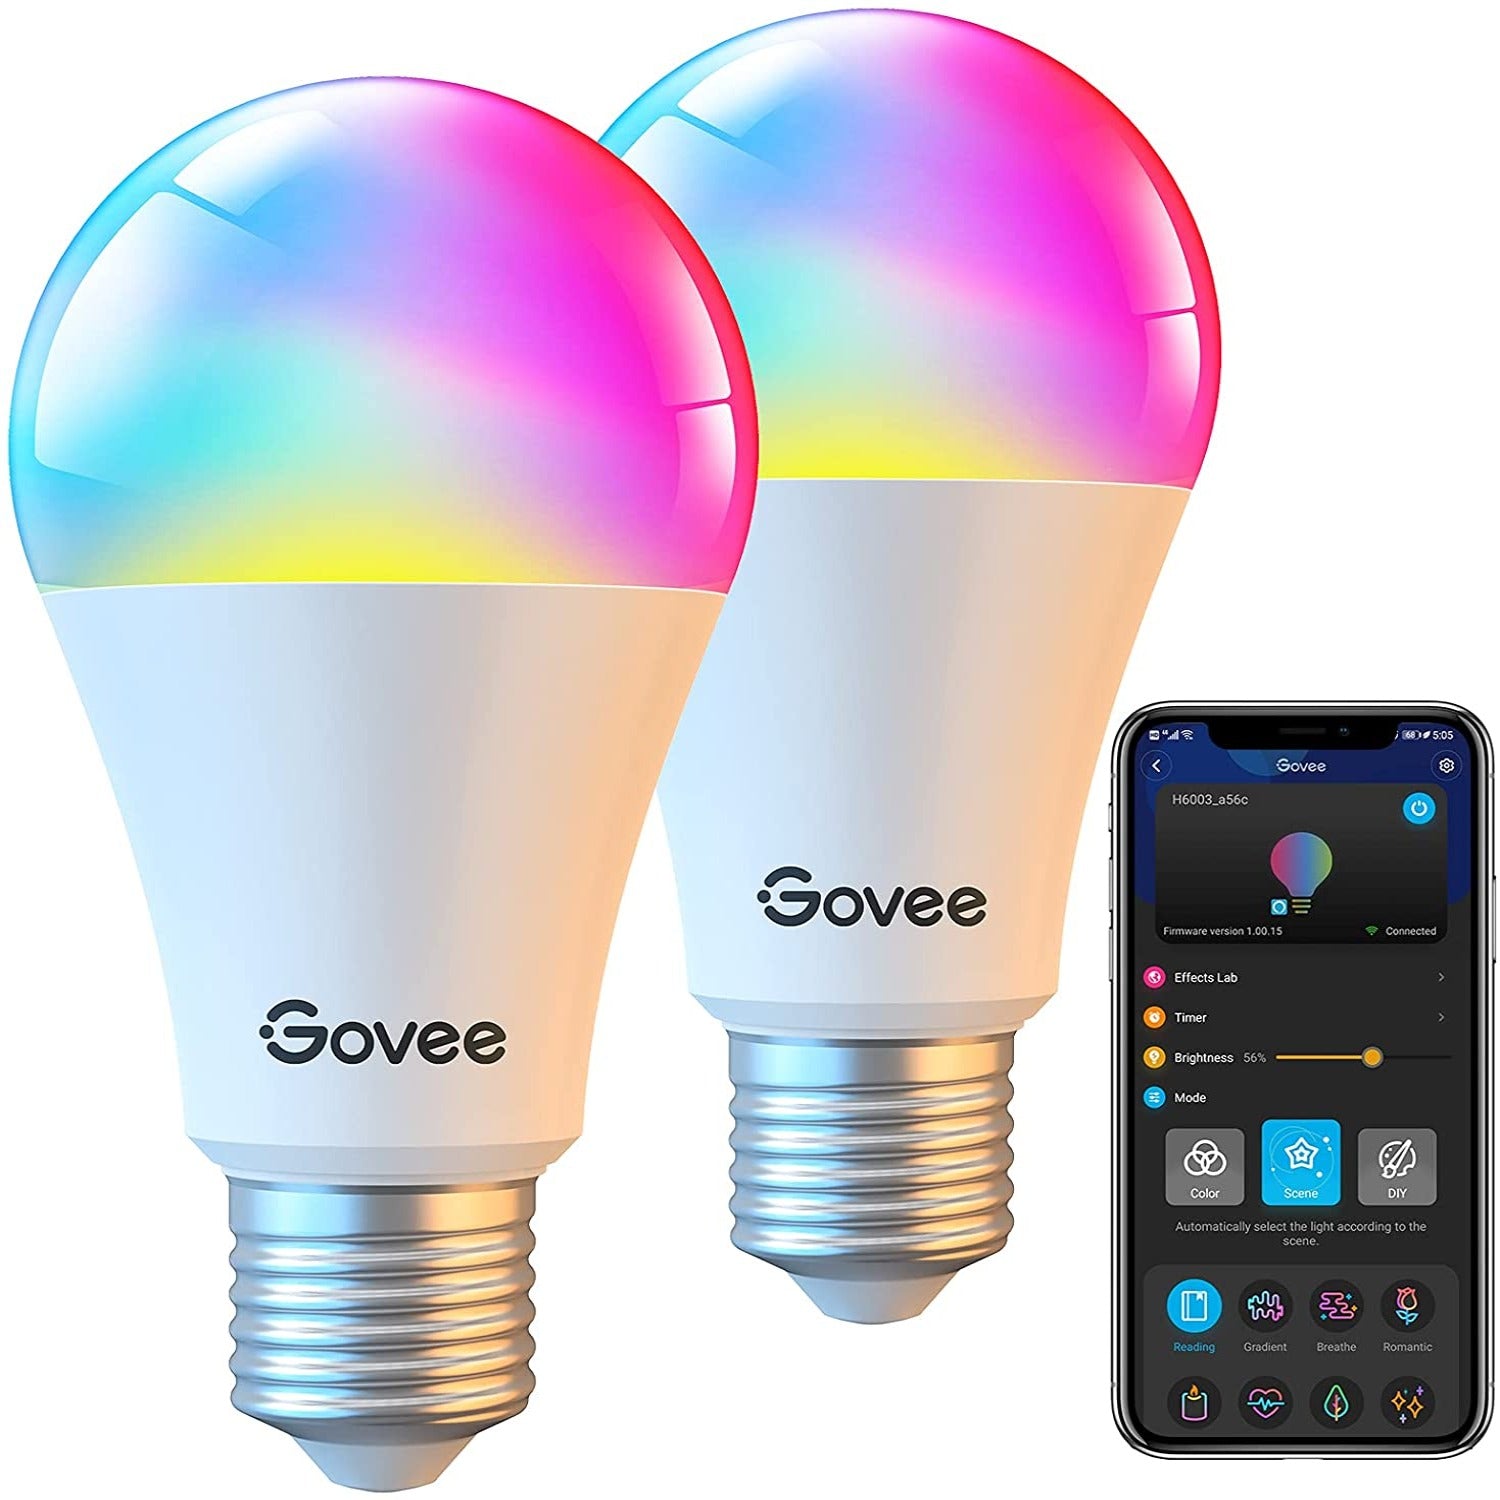 

Govee Wi-Fi RGBWW Smart LED Bulbs (2 PACK)